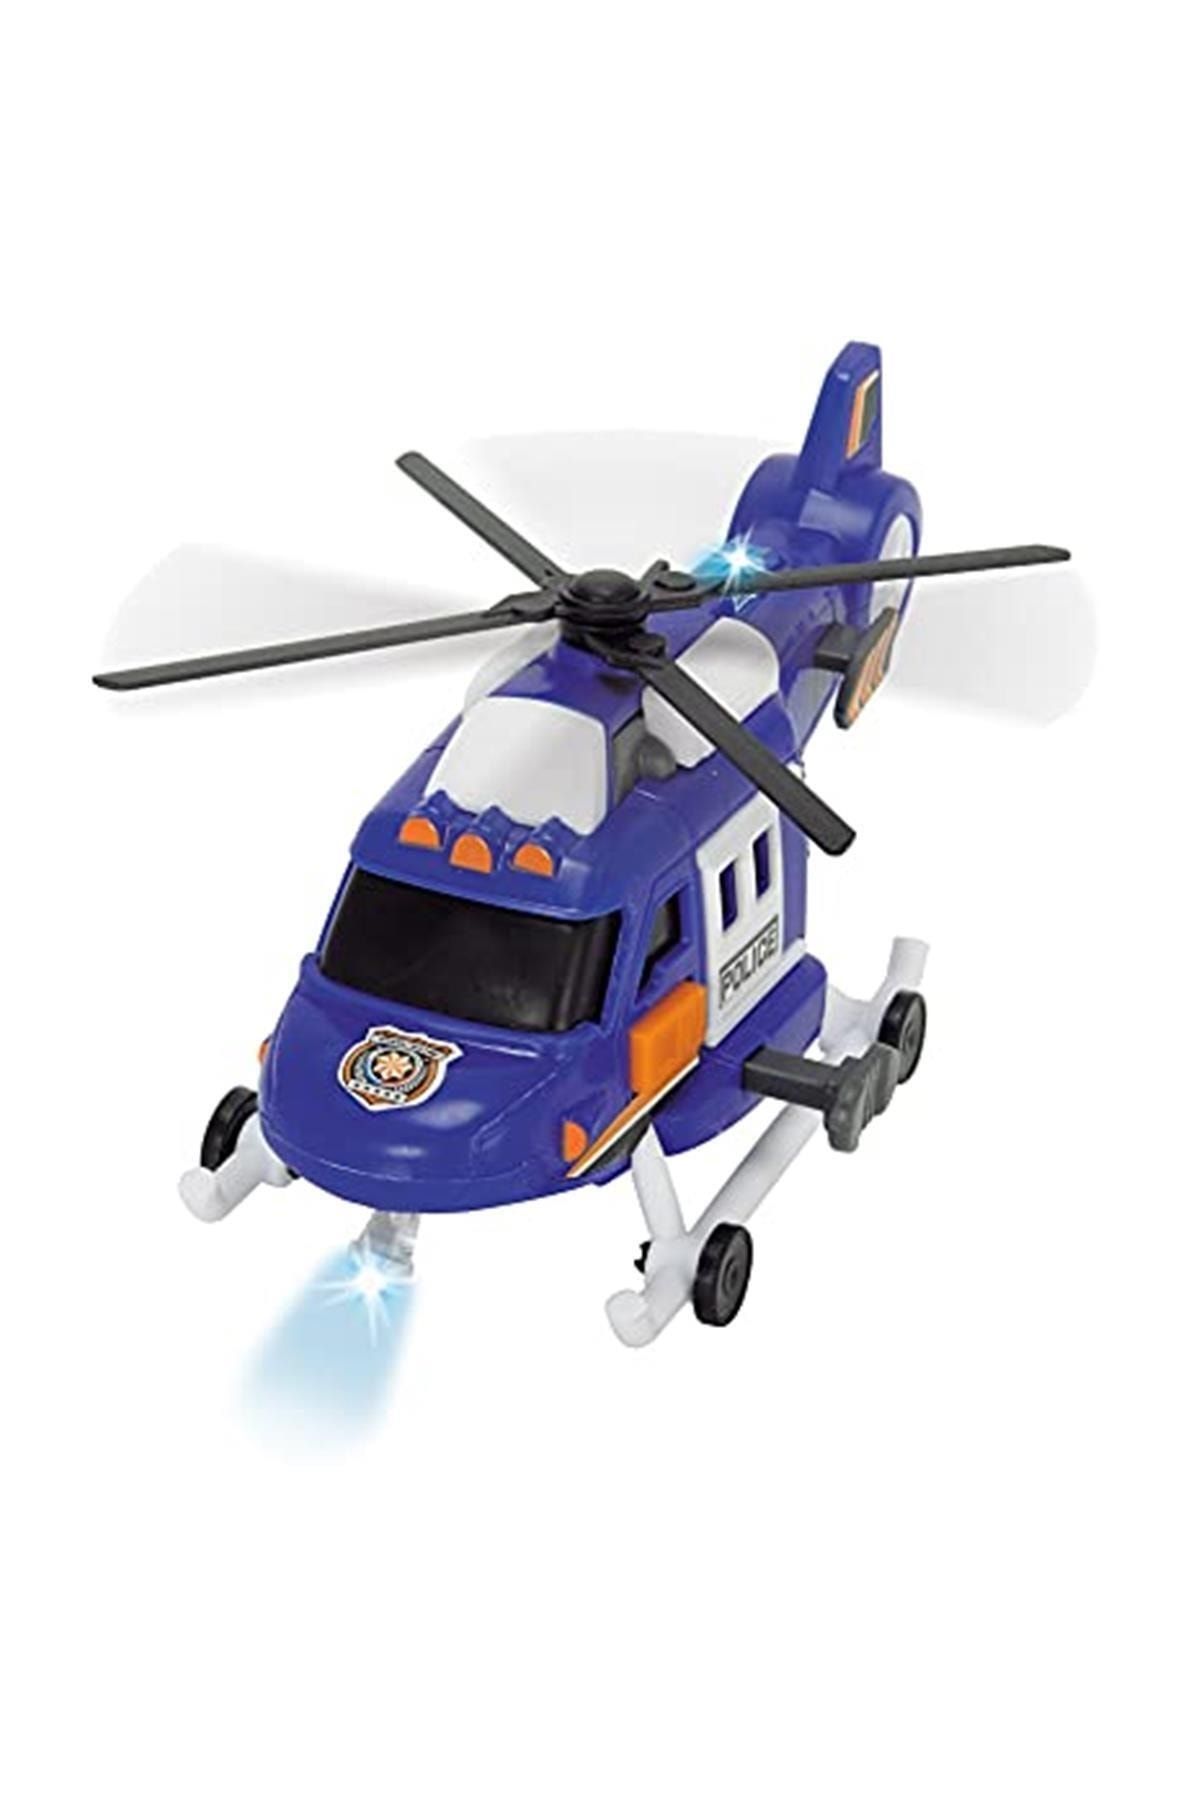 Dickie Toys Oyuncak Helikopter Arabası, 18 Cm, Sesli/ışıklı, 203302016